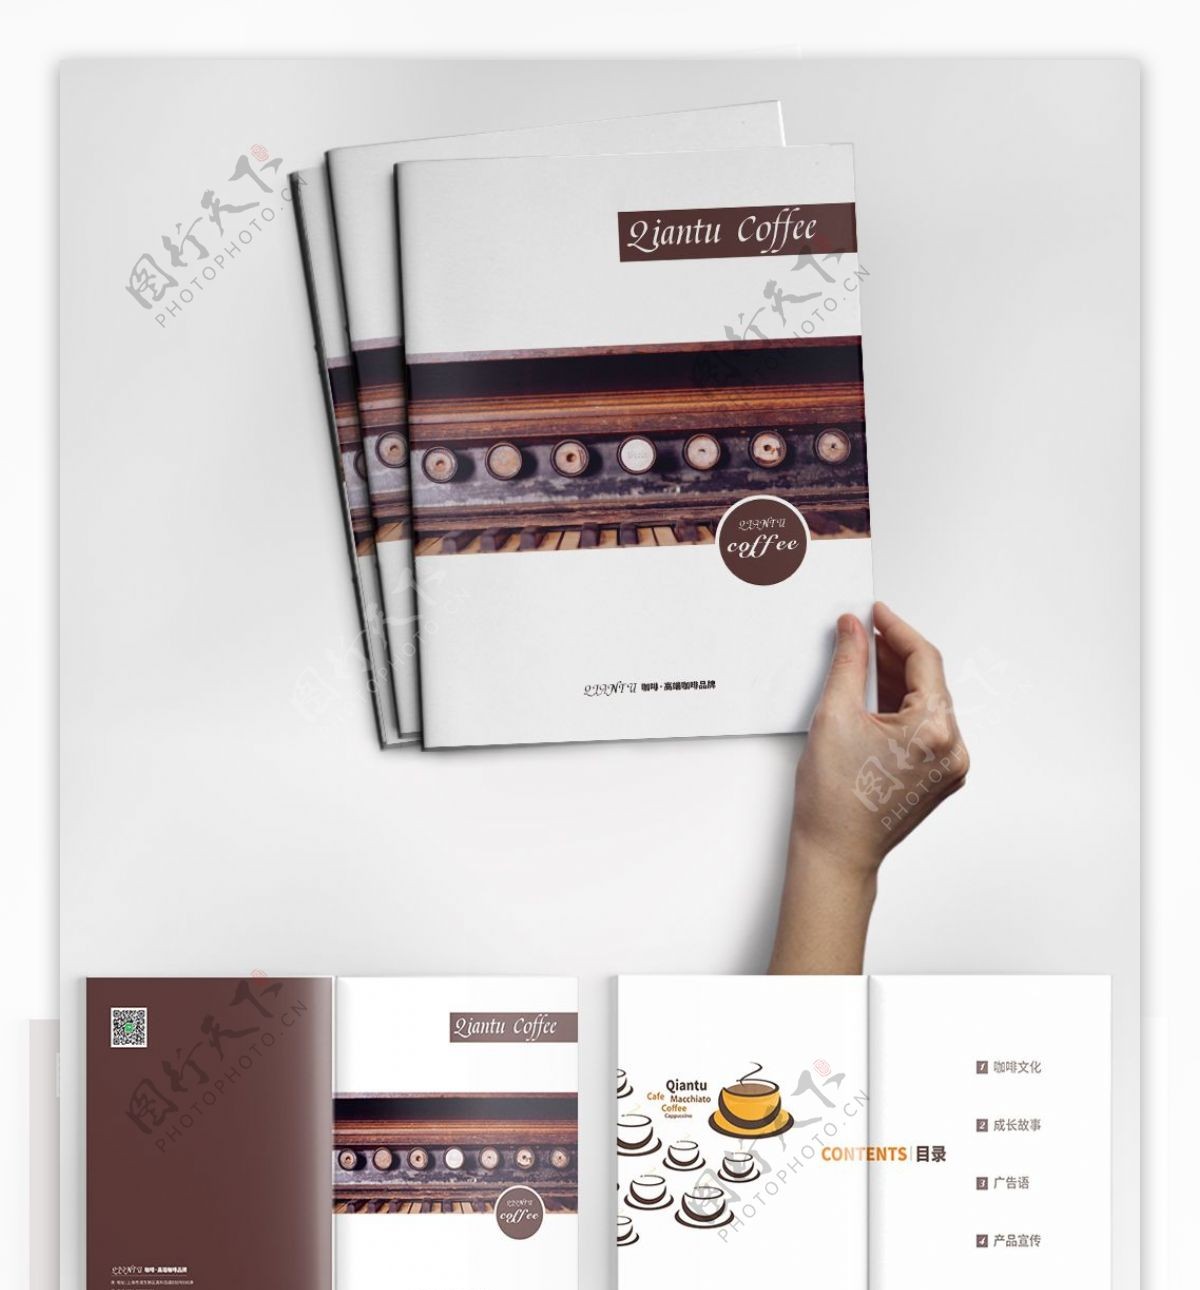 简约时尚咖啡画册产品画册企业画册设计